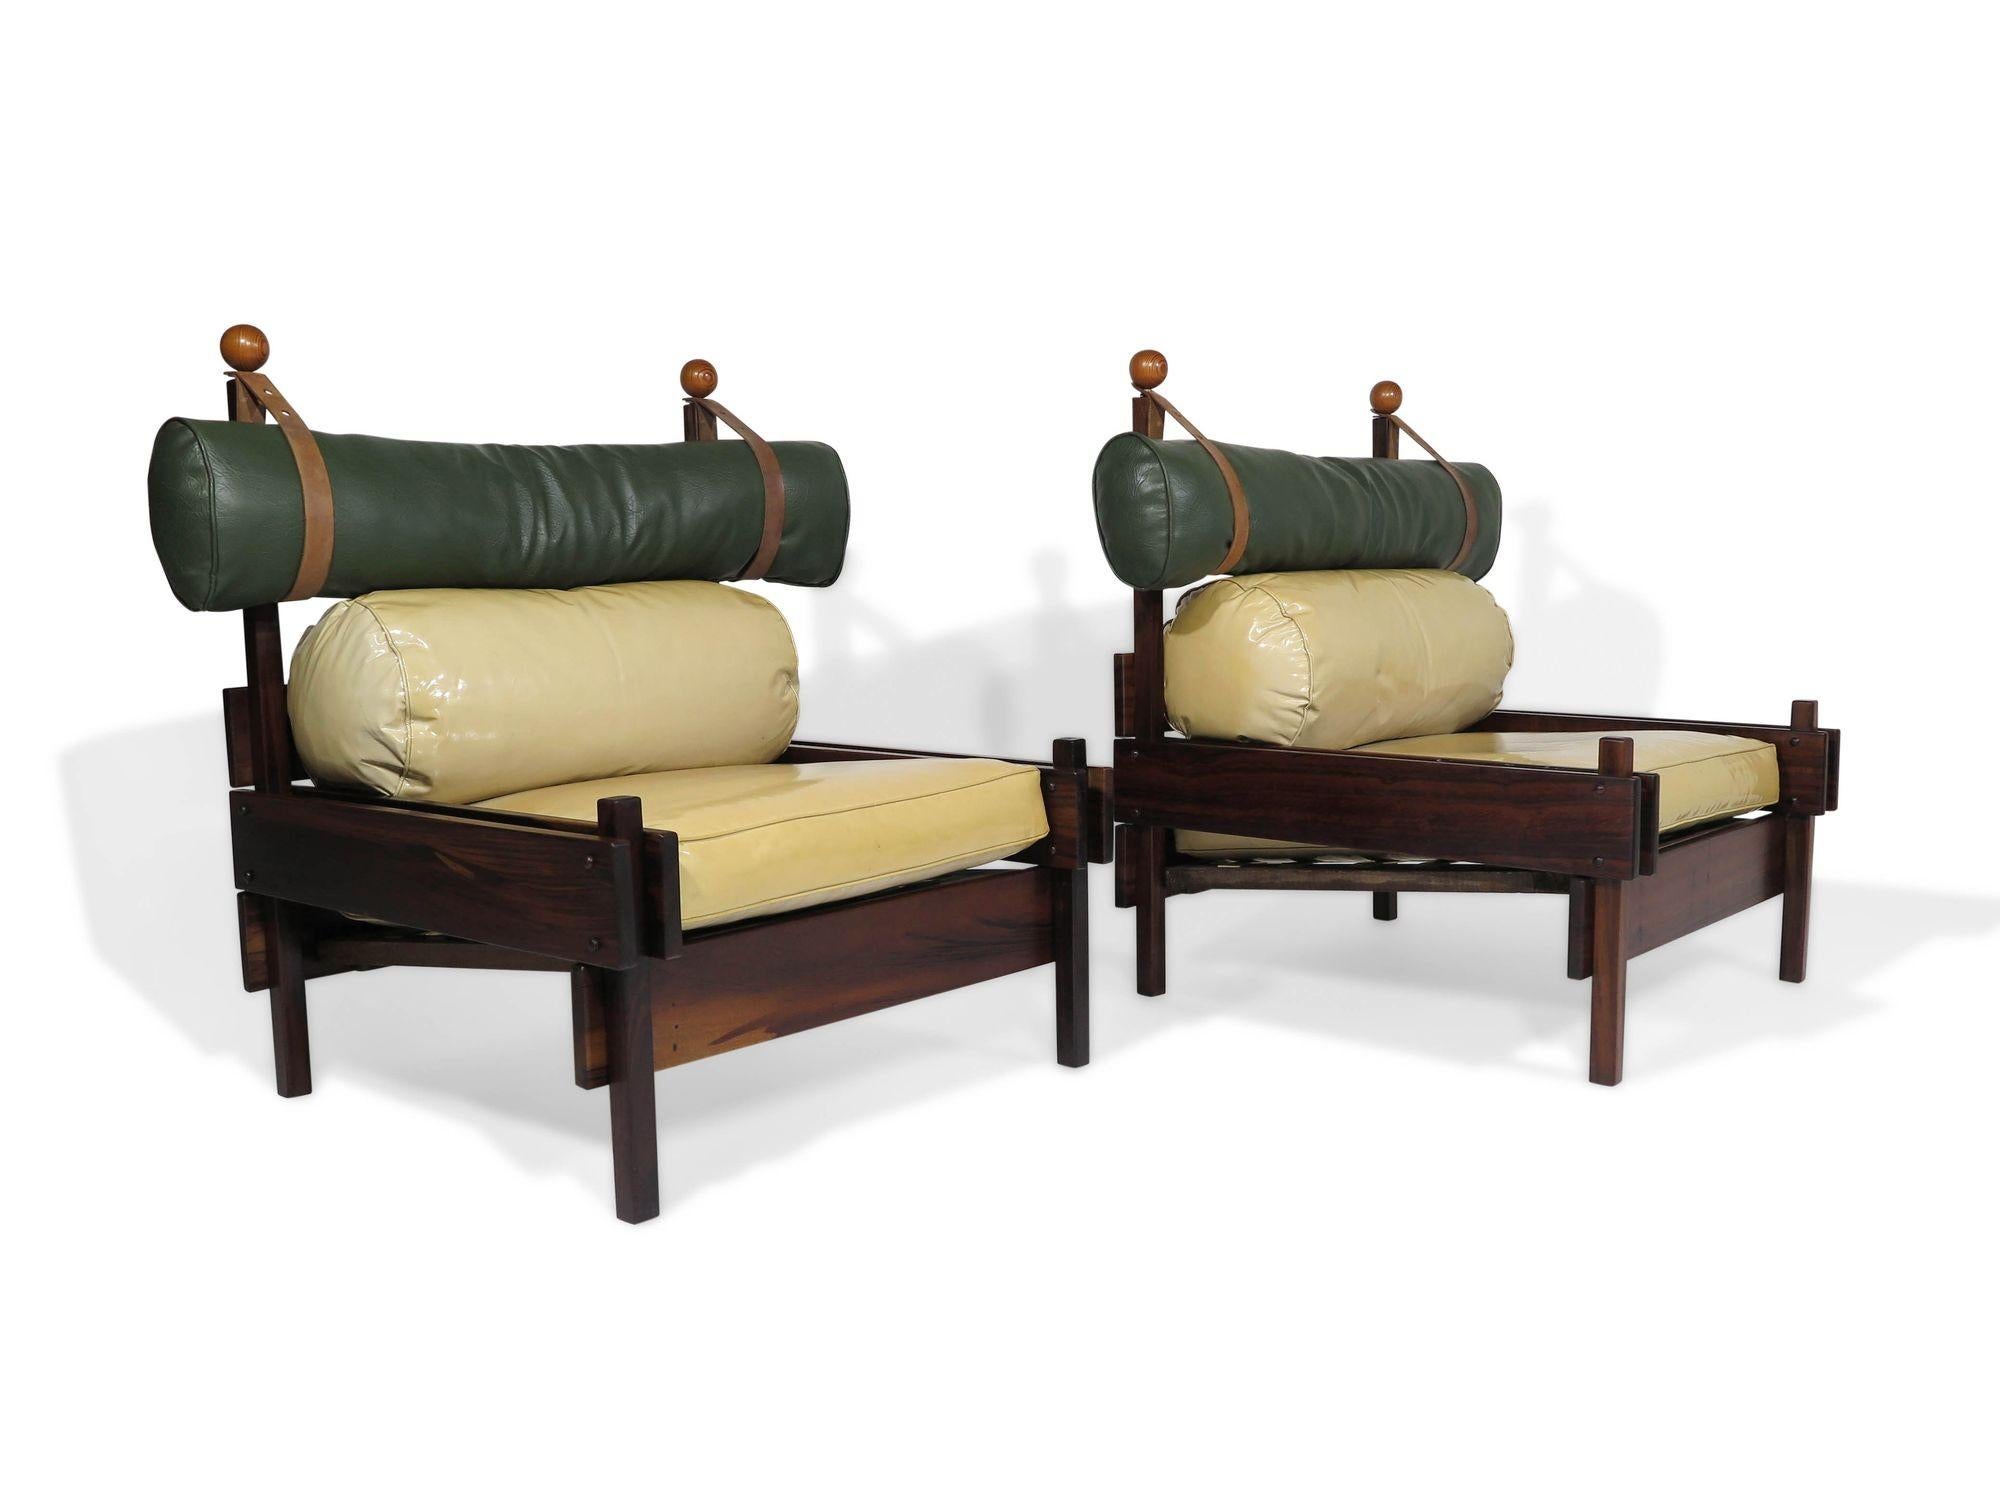 Superbe paire de chaises longues Sergio Rodrigues Tonico produites par Oca/Meia-Pataca au Brésil, 1962. Les chaises sont construites en bois massif d'Imbuia et comportent les coussins en vinyle d'origine avec des ceintures en cuir pour l'appui-tête